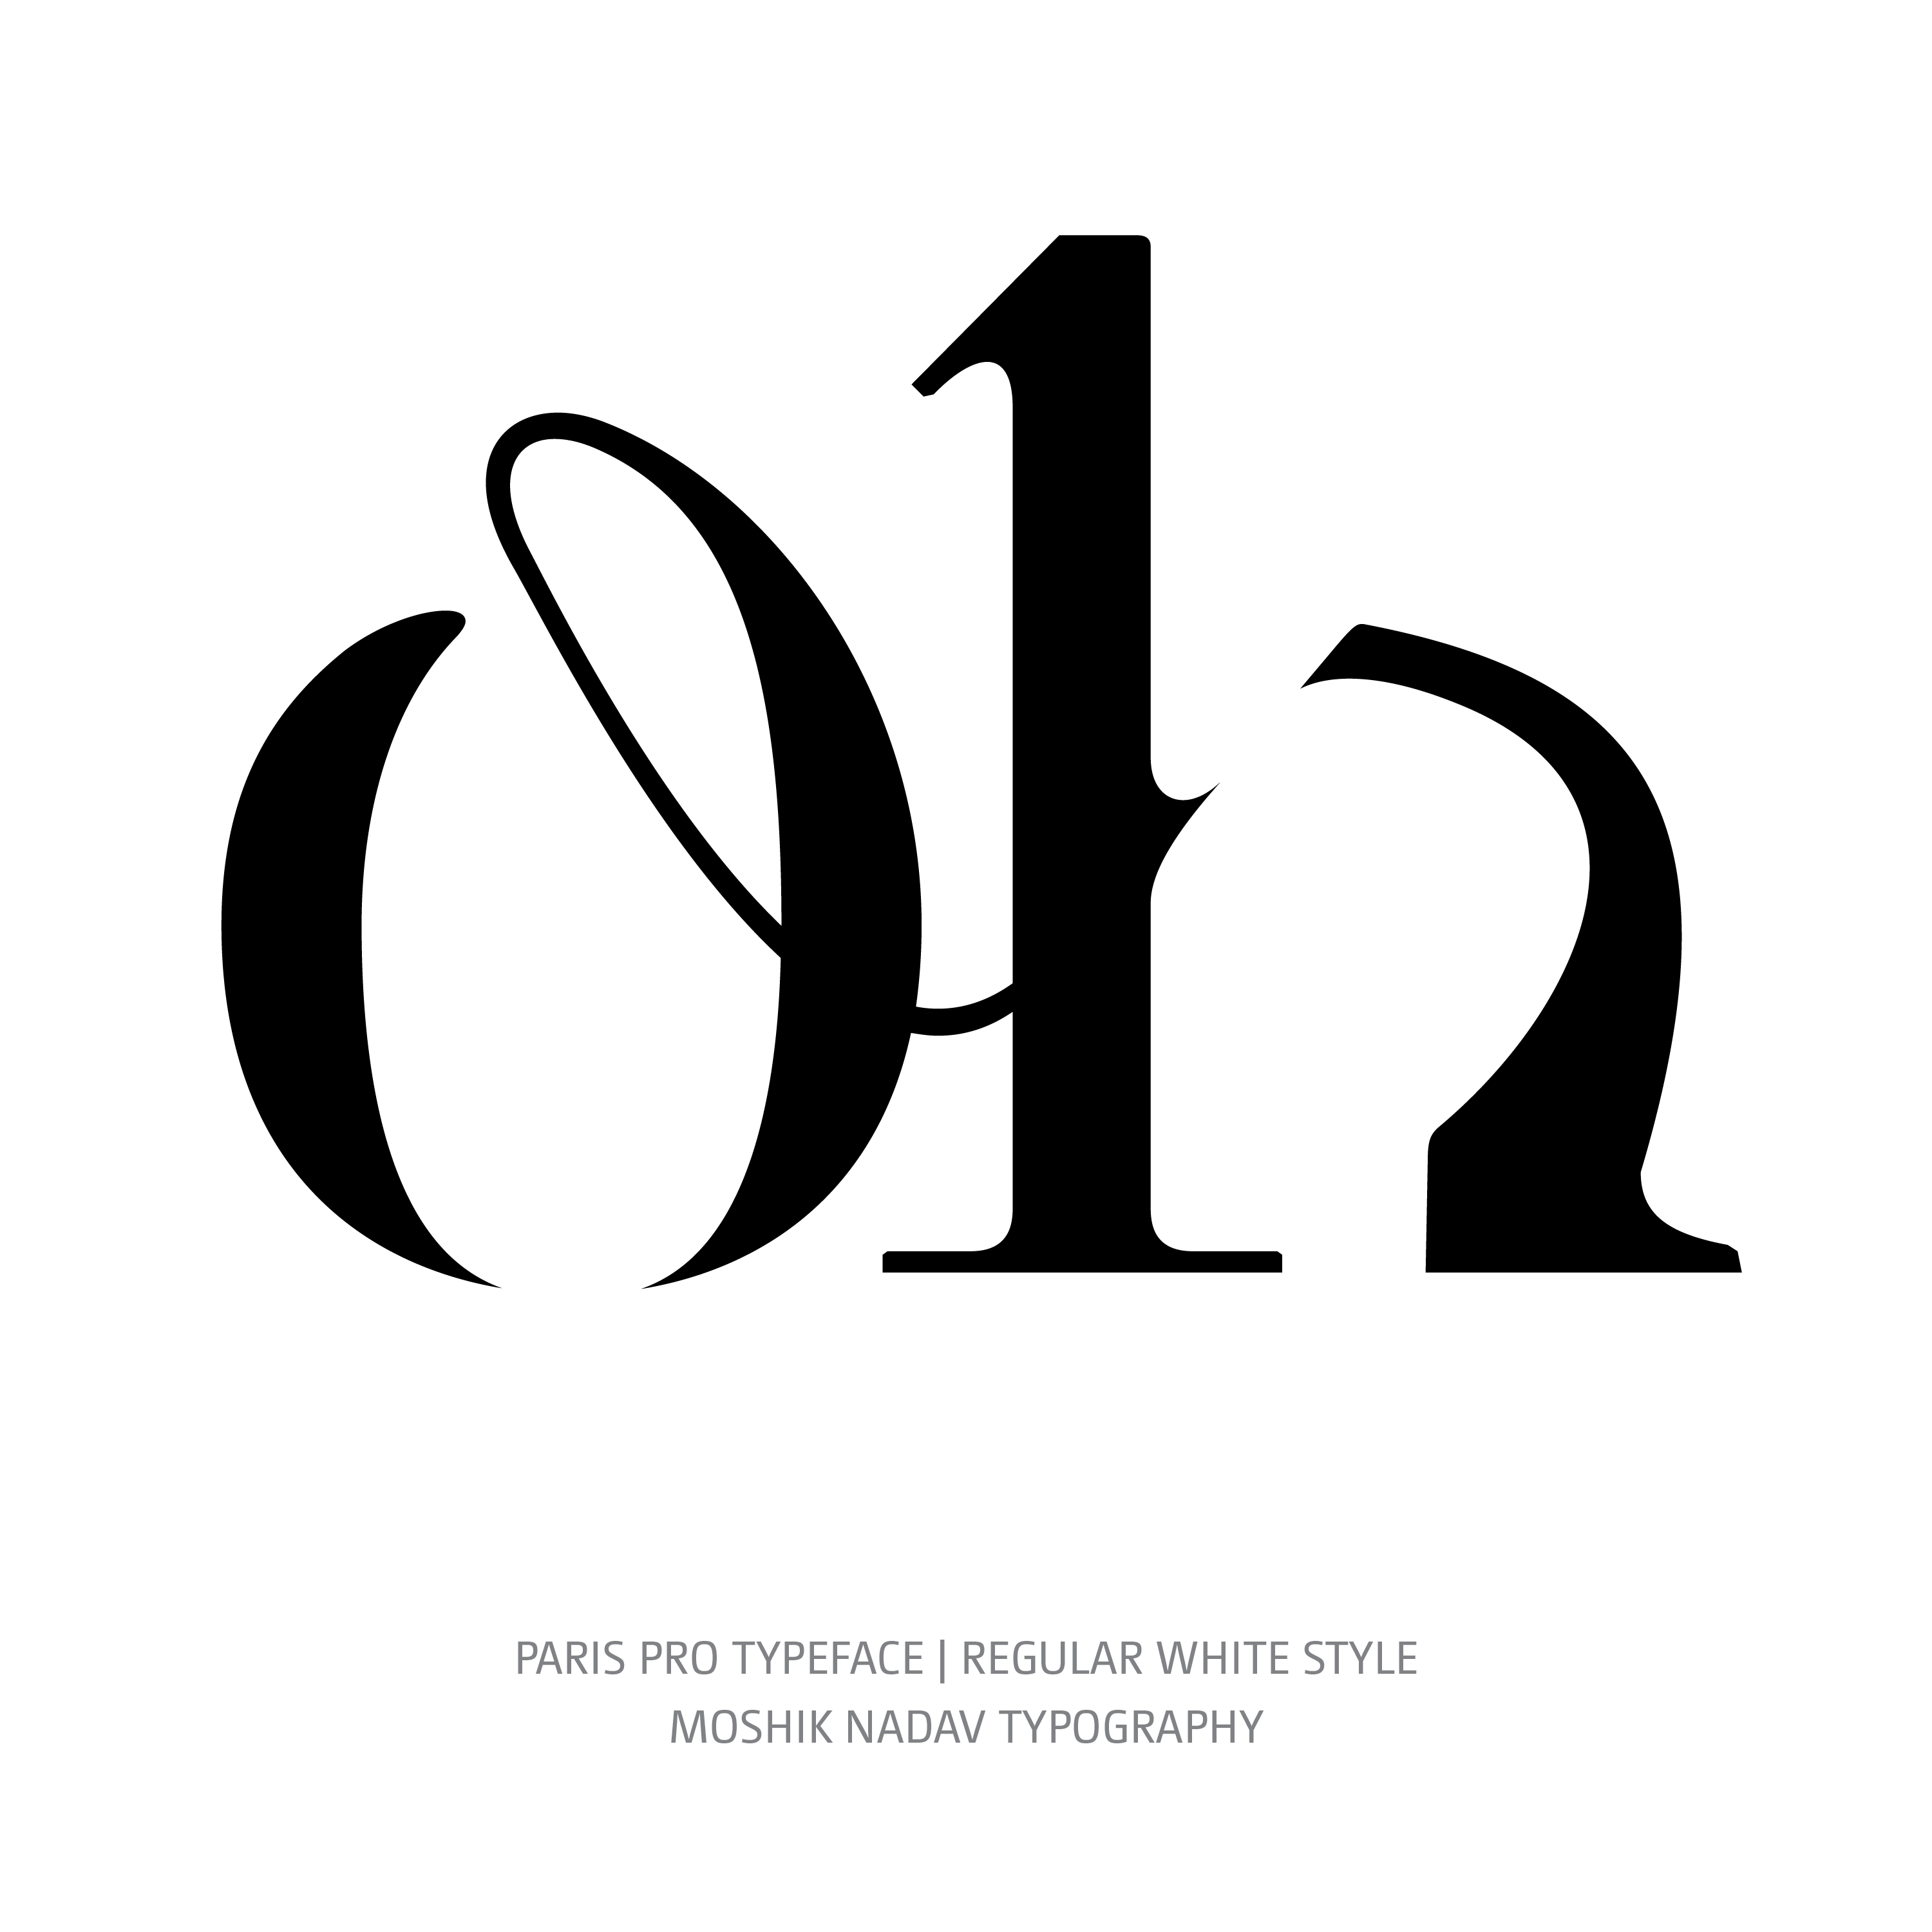 Paris Pro Typeface Regular White oh ligature